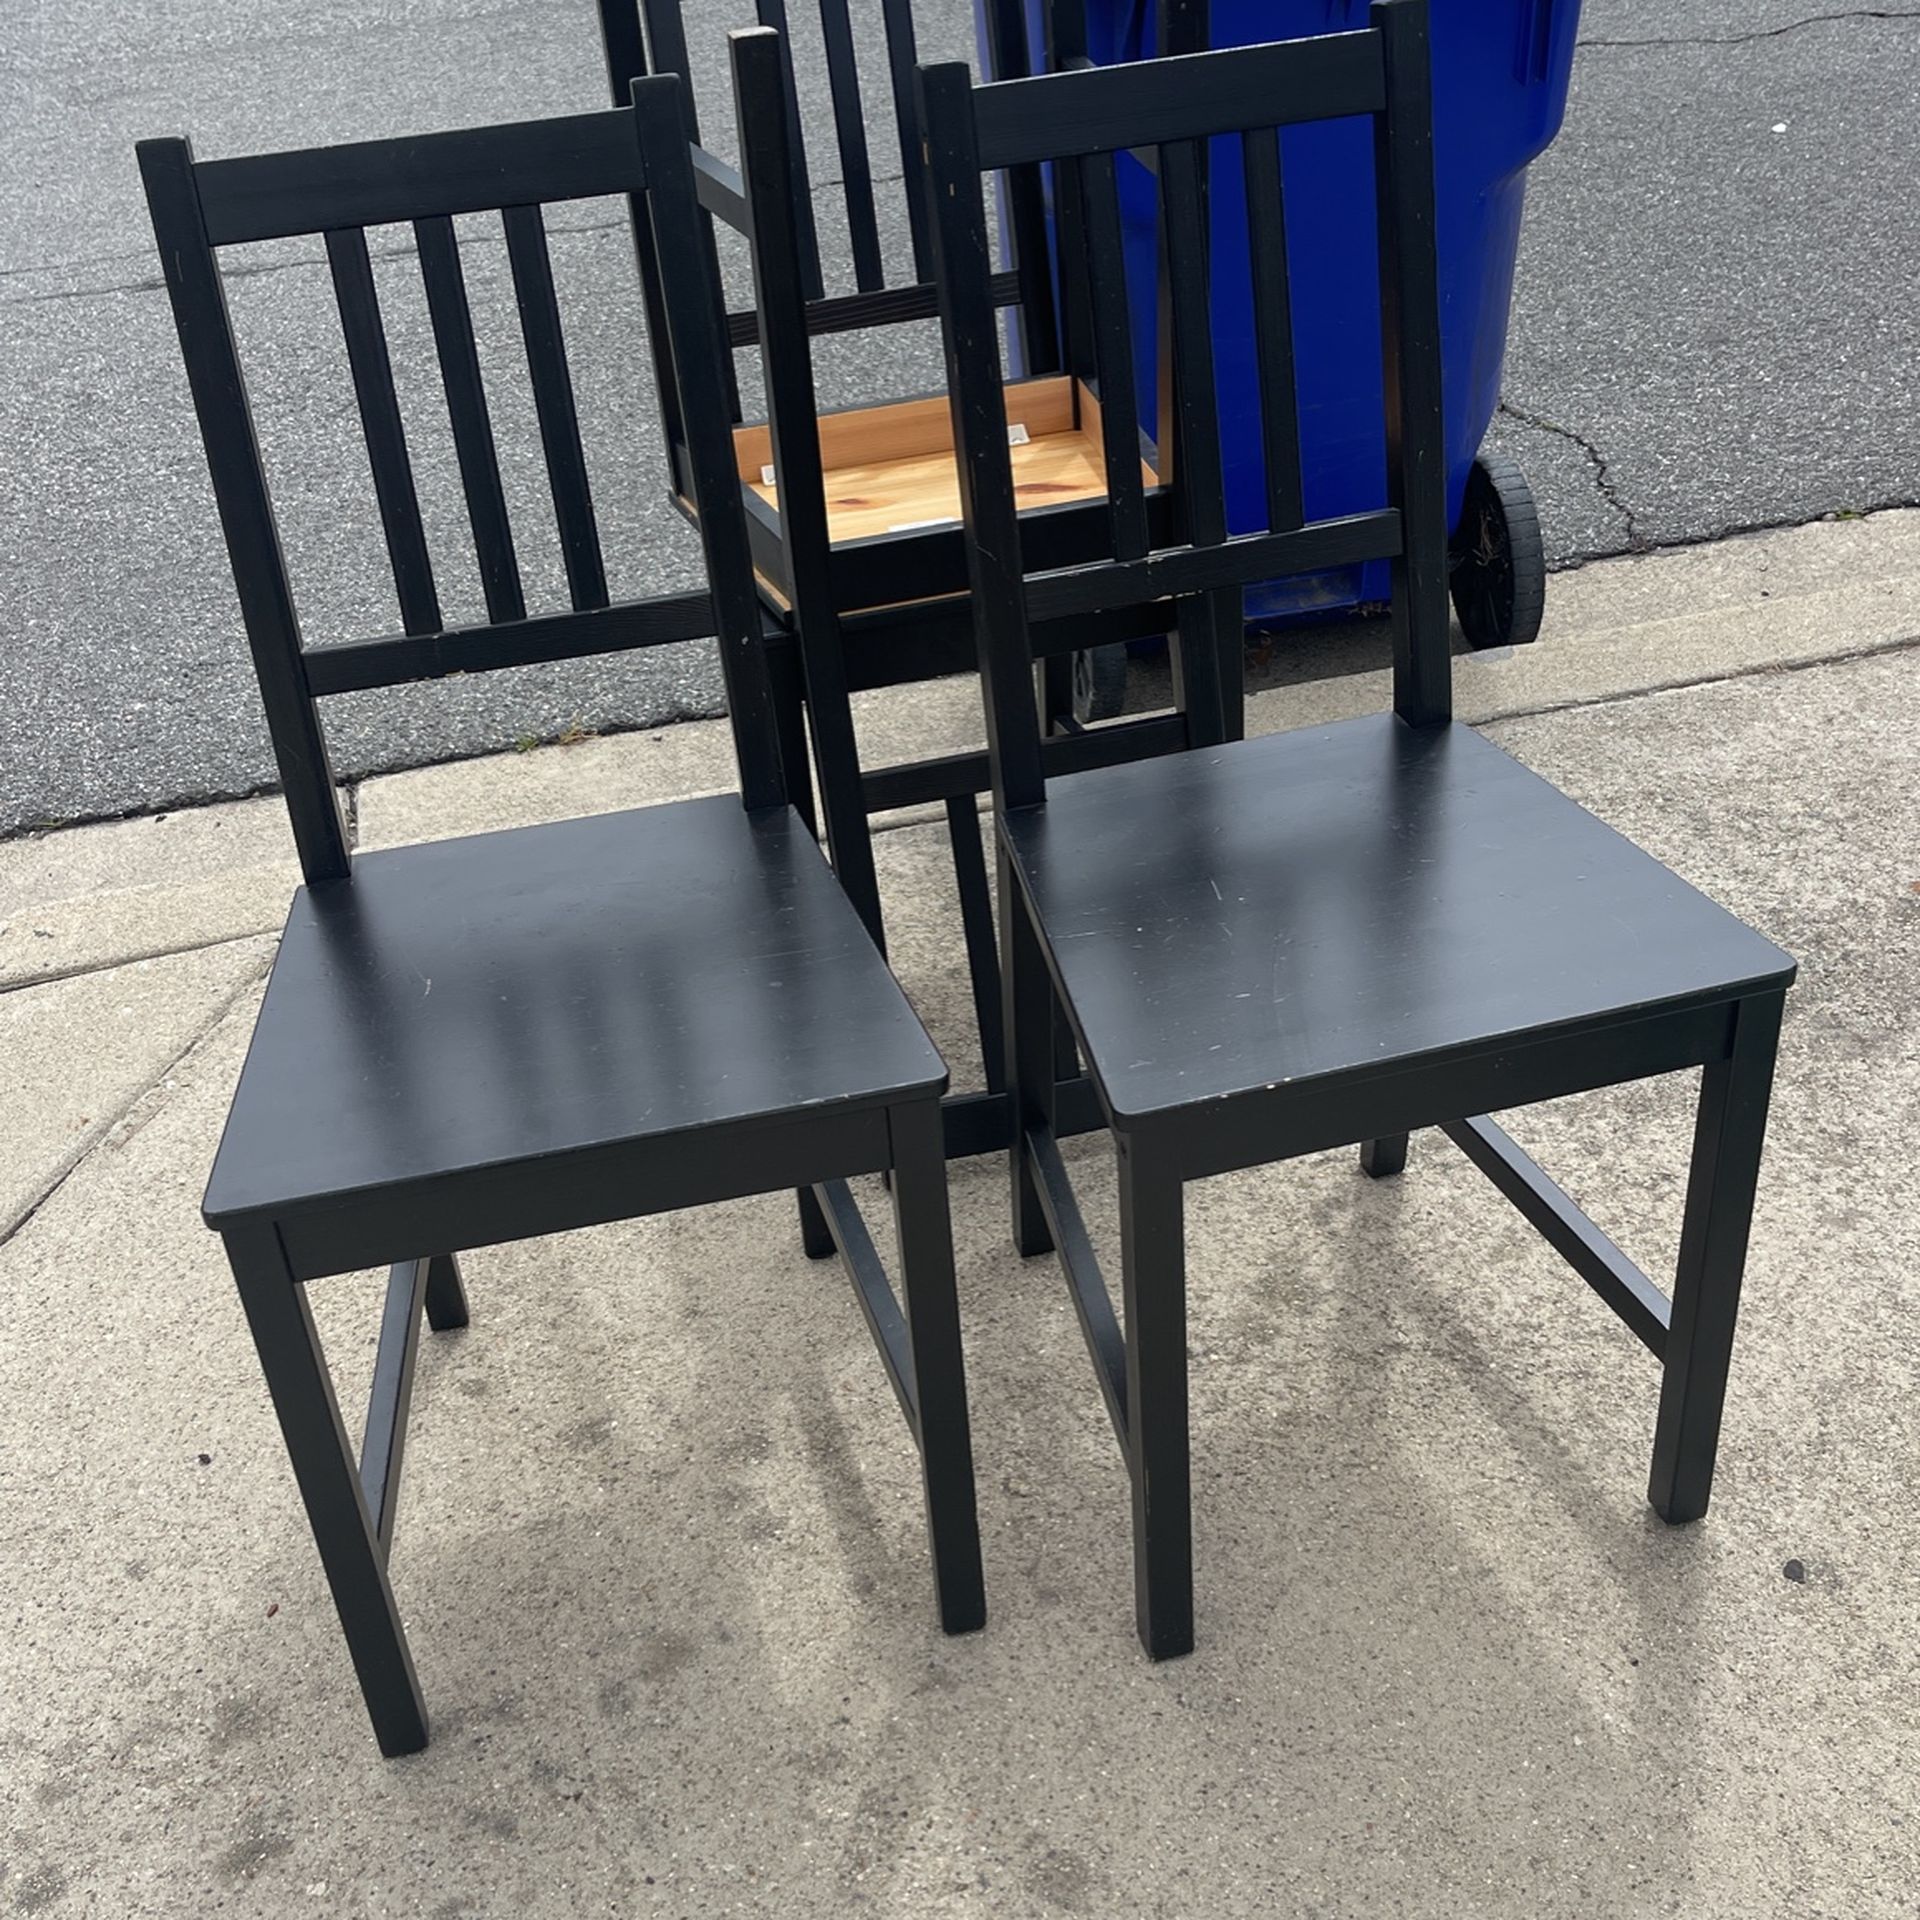 Free IKEA  Chairs